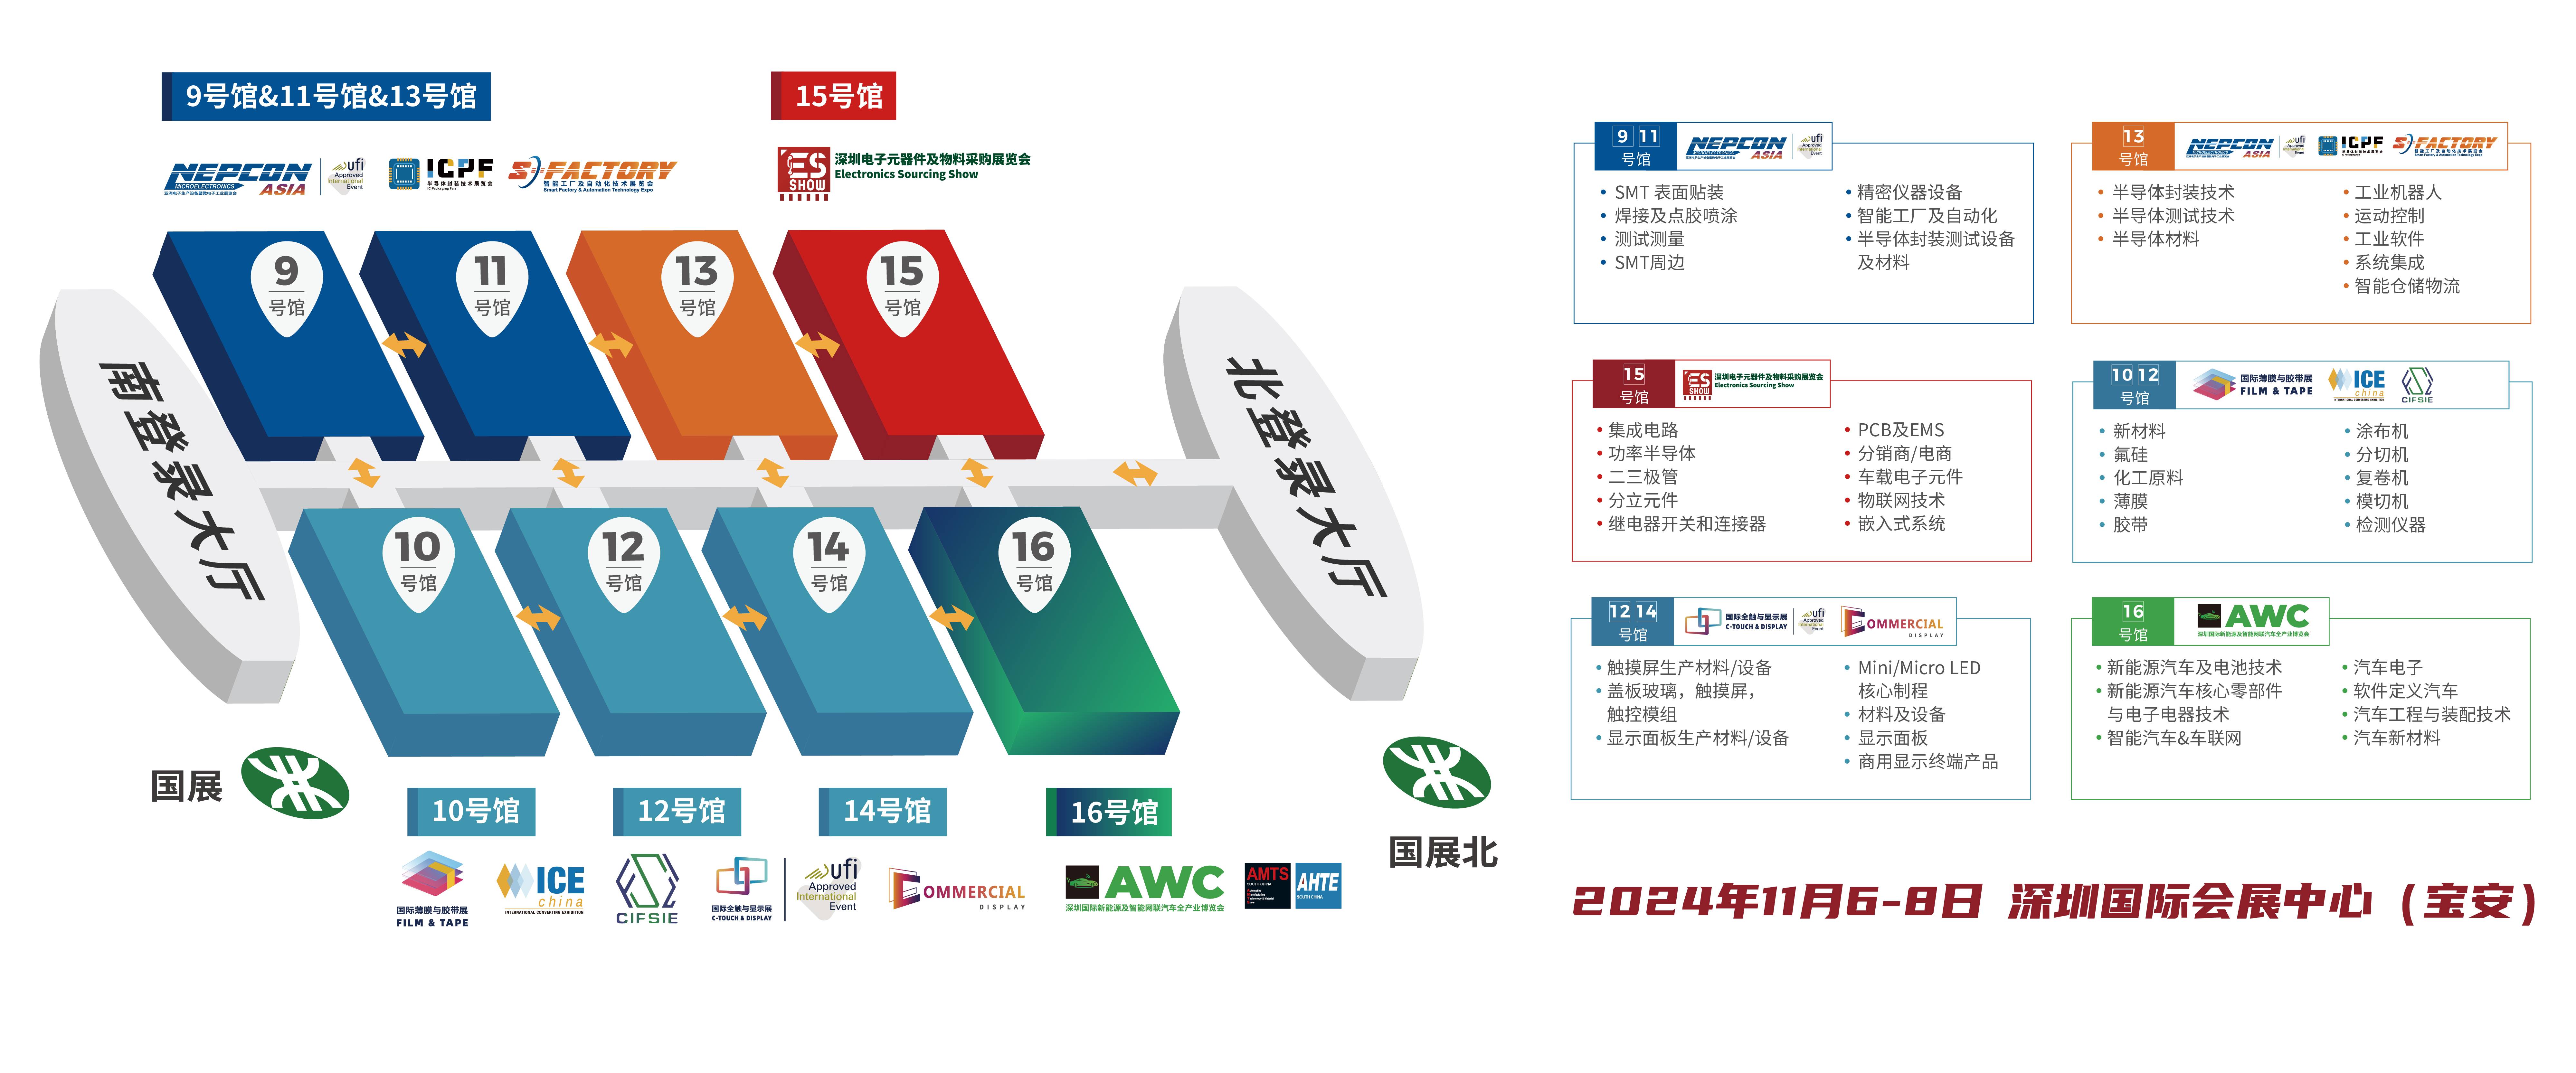 深圳电子展 华南电子展 汽车供应链 新能源汽车 ESSHOW